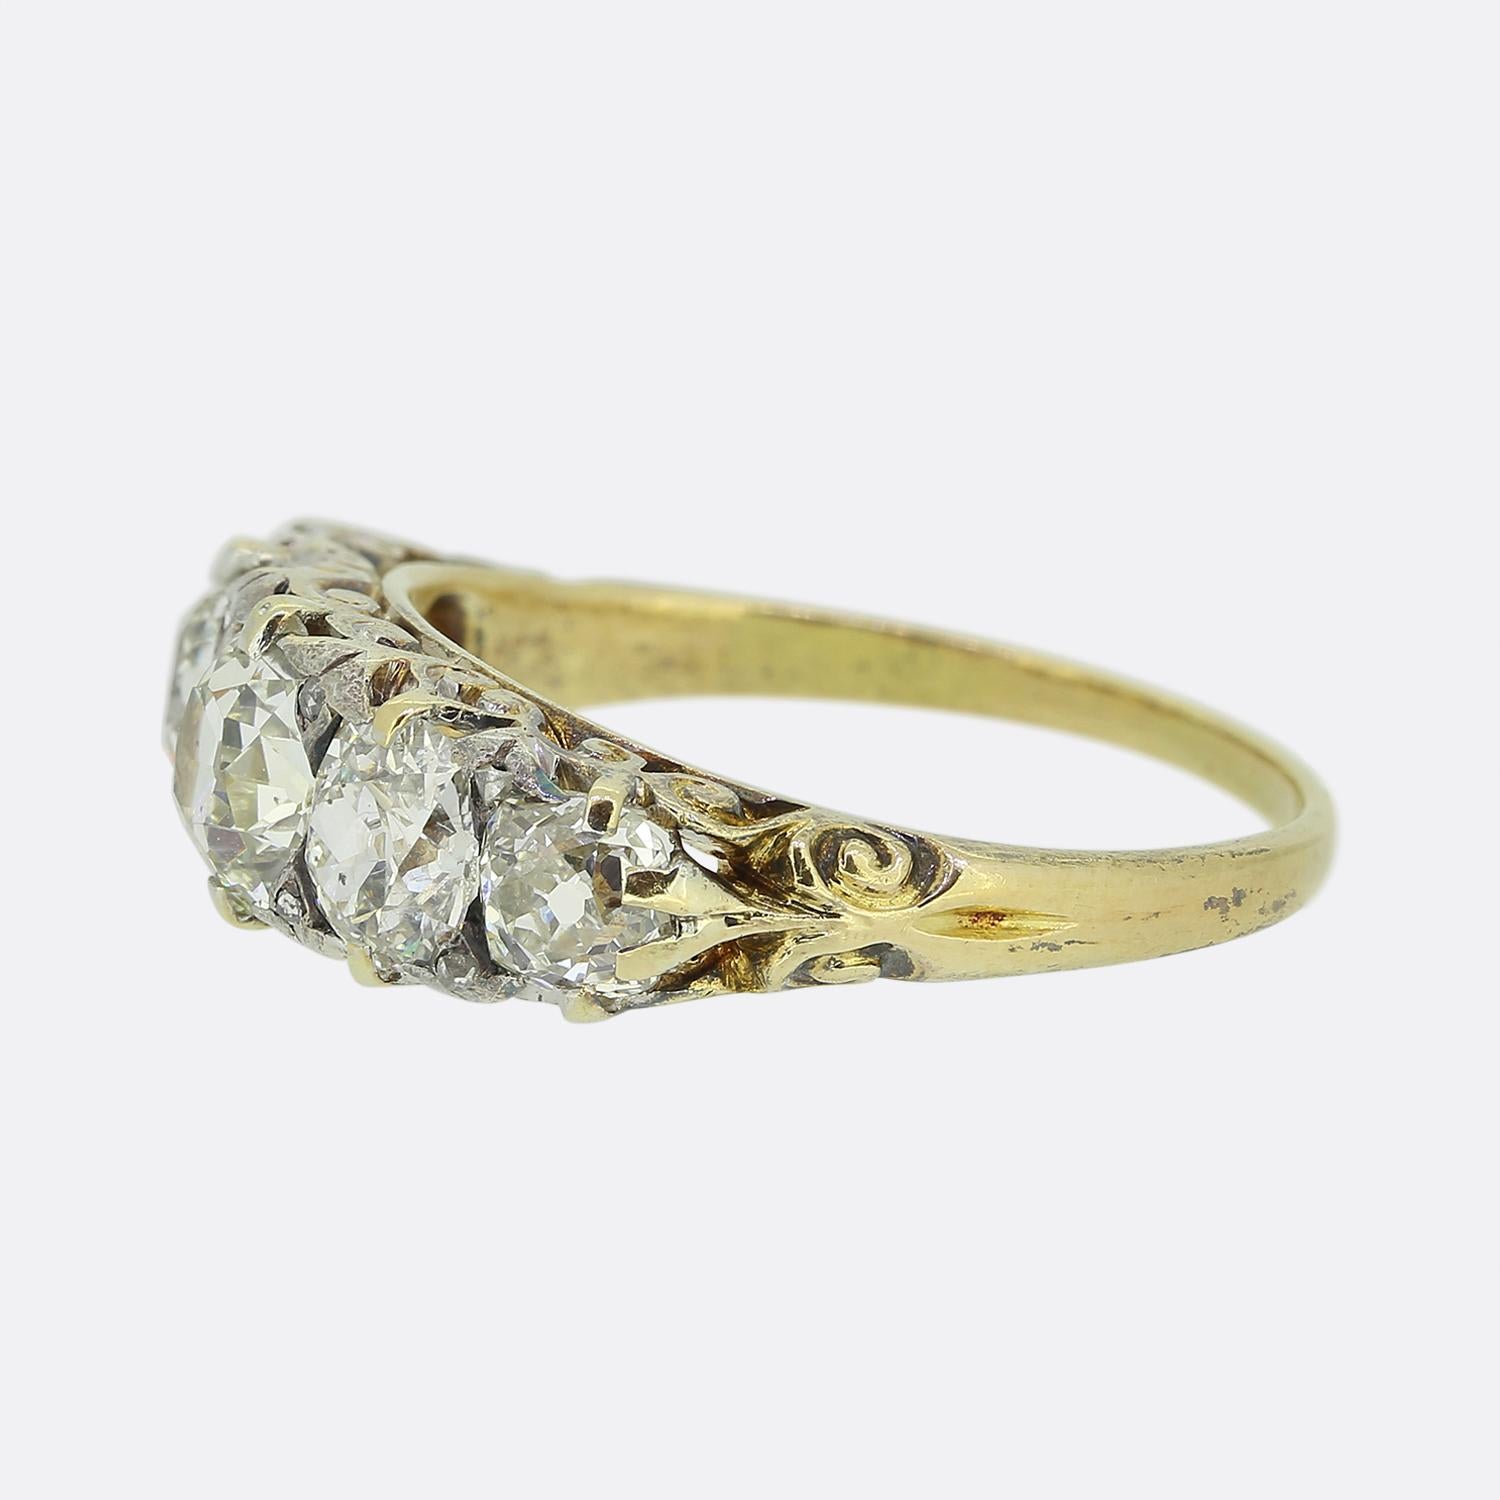 Dies ist ein 18ct Gelbgold viktorianischen Diamant fünf Stein Ring. Die Diamanten sind von strahlend weißem Altschliff und funkeln herrlich. Sie sind auch in der Größe gestaffelt, wobei sich die größten in der Mitte befinden. Er ist mit eleganten